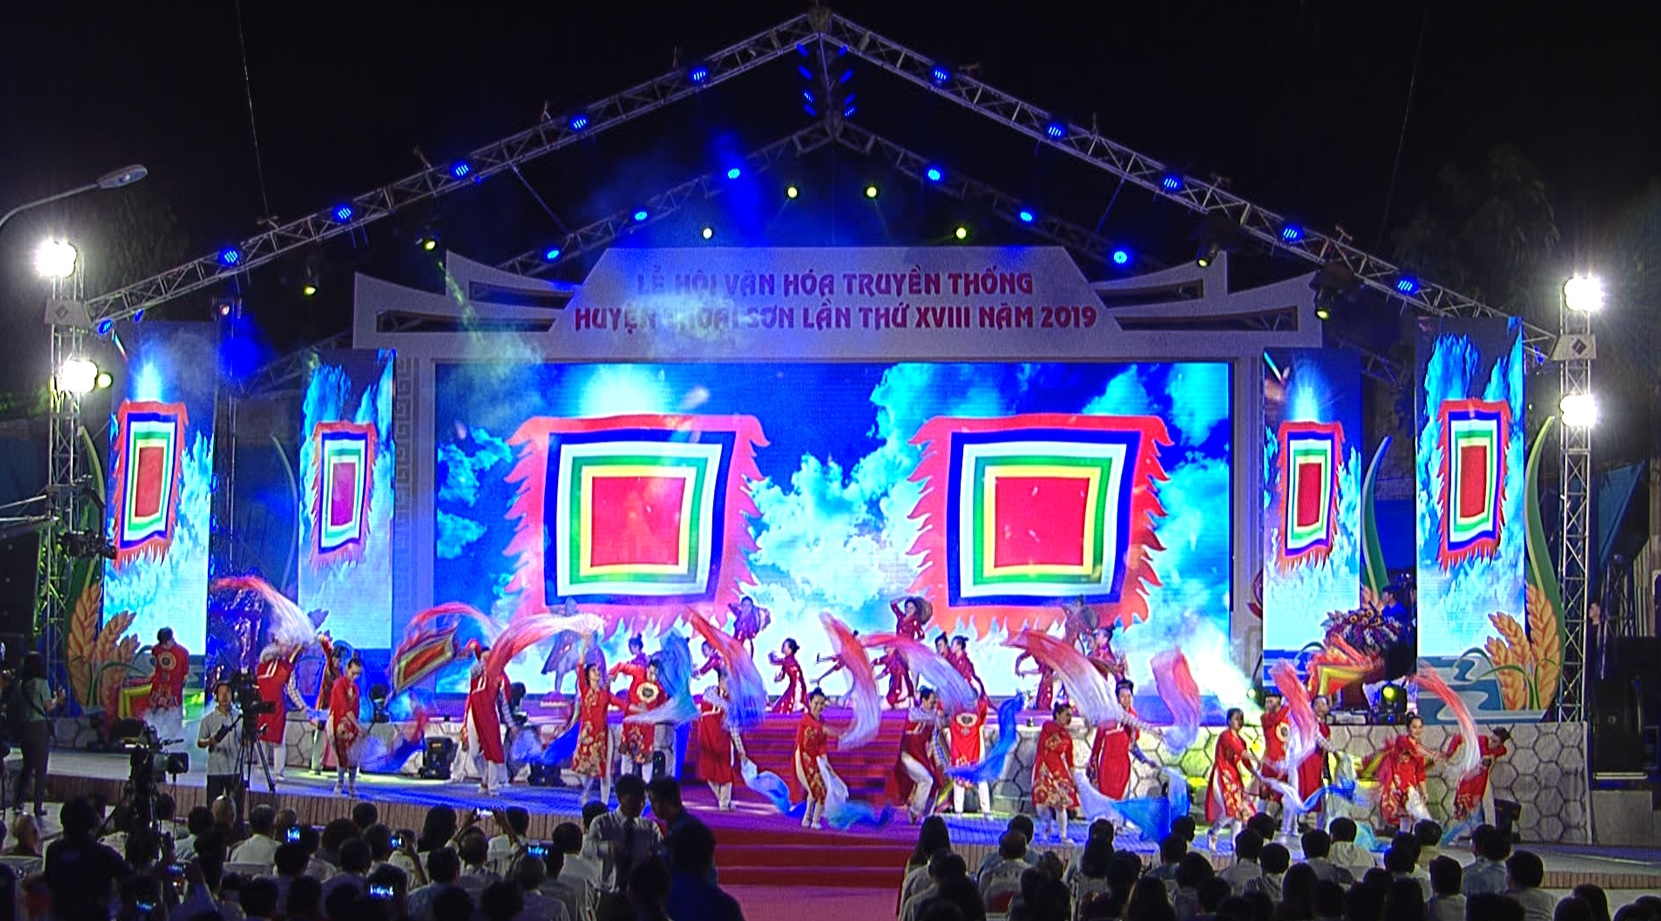 Lễ hội văn hóa truyền thống huyện Thoại Sơn lần thứ XVIII - 2019